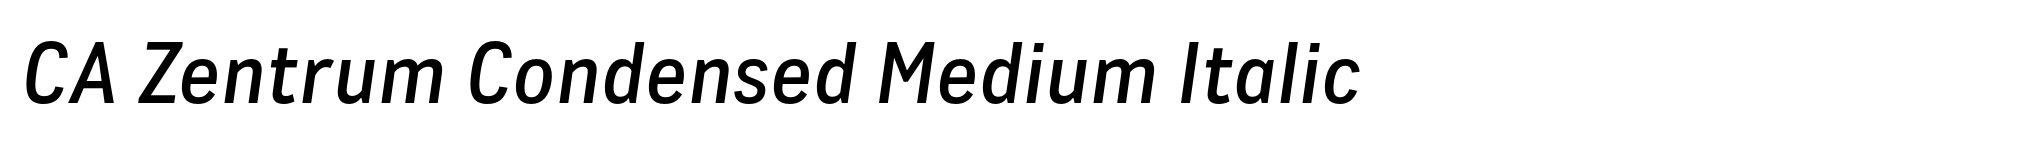 CA Zentrum Condensed Medium Italic image